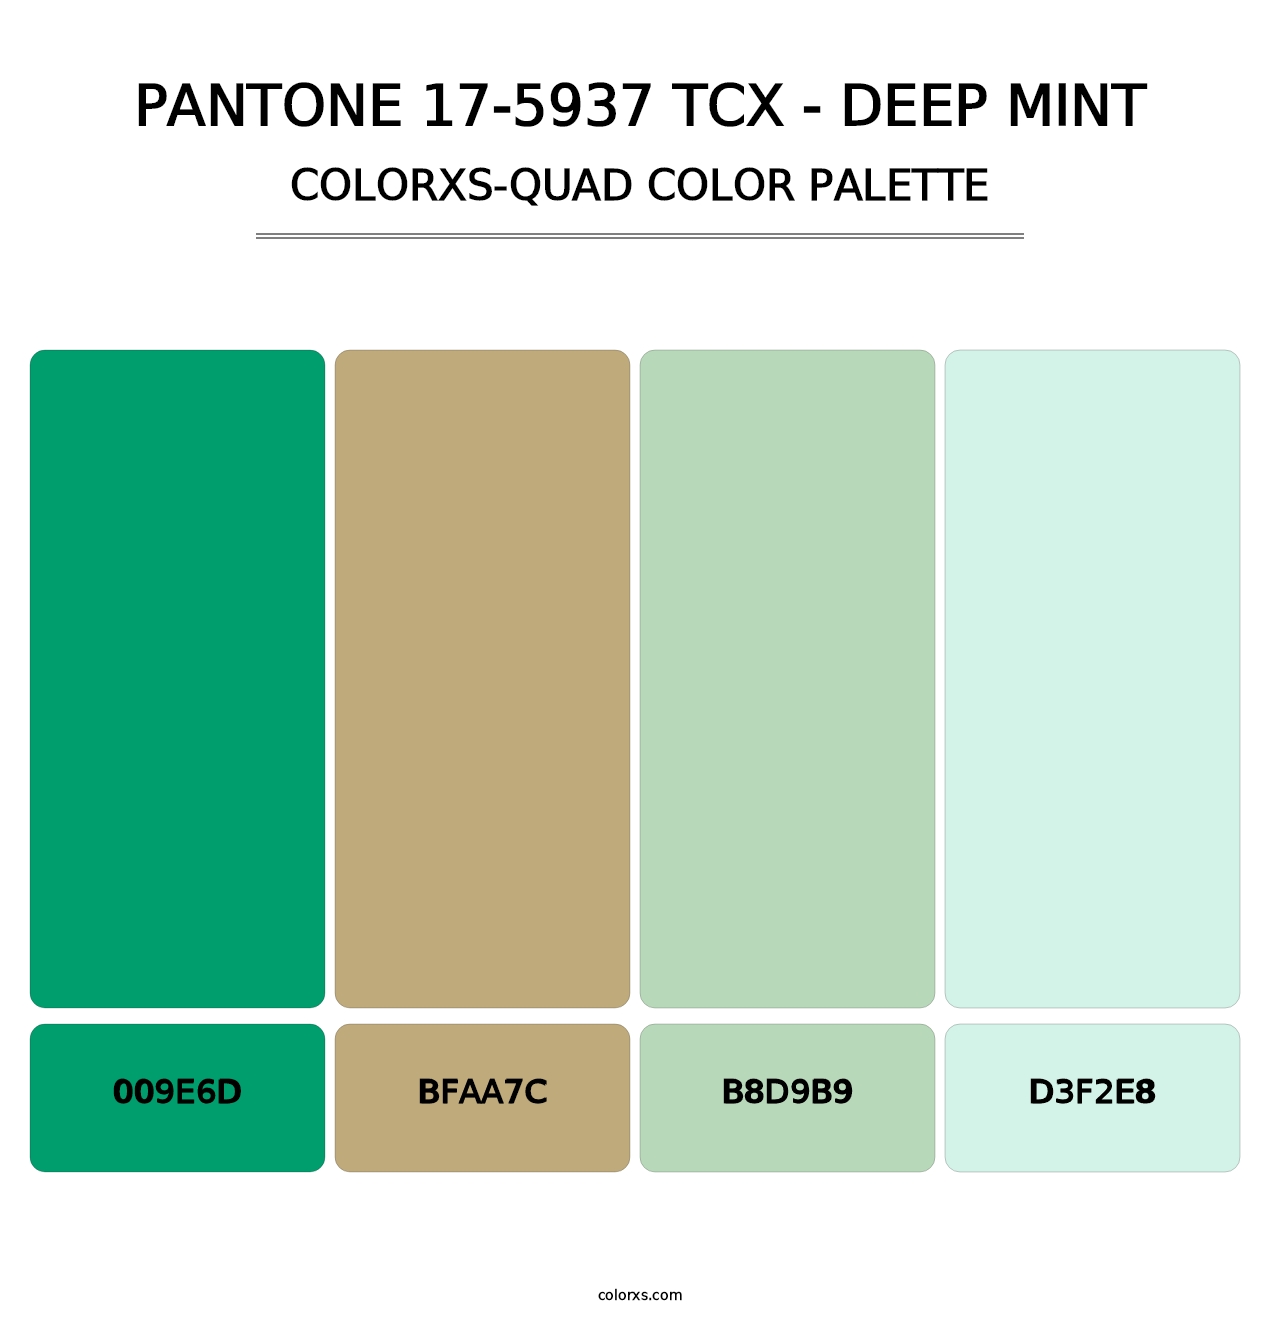 PANTONE 17-5937 TCX - Deep Mint - Colorxs Quad Palette